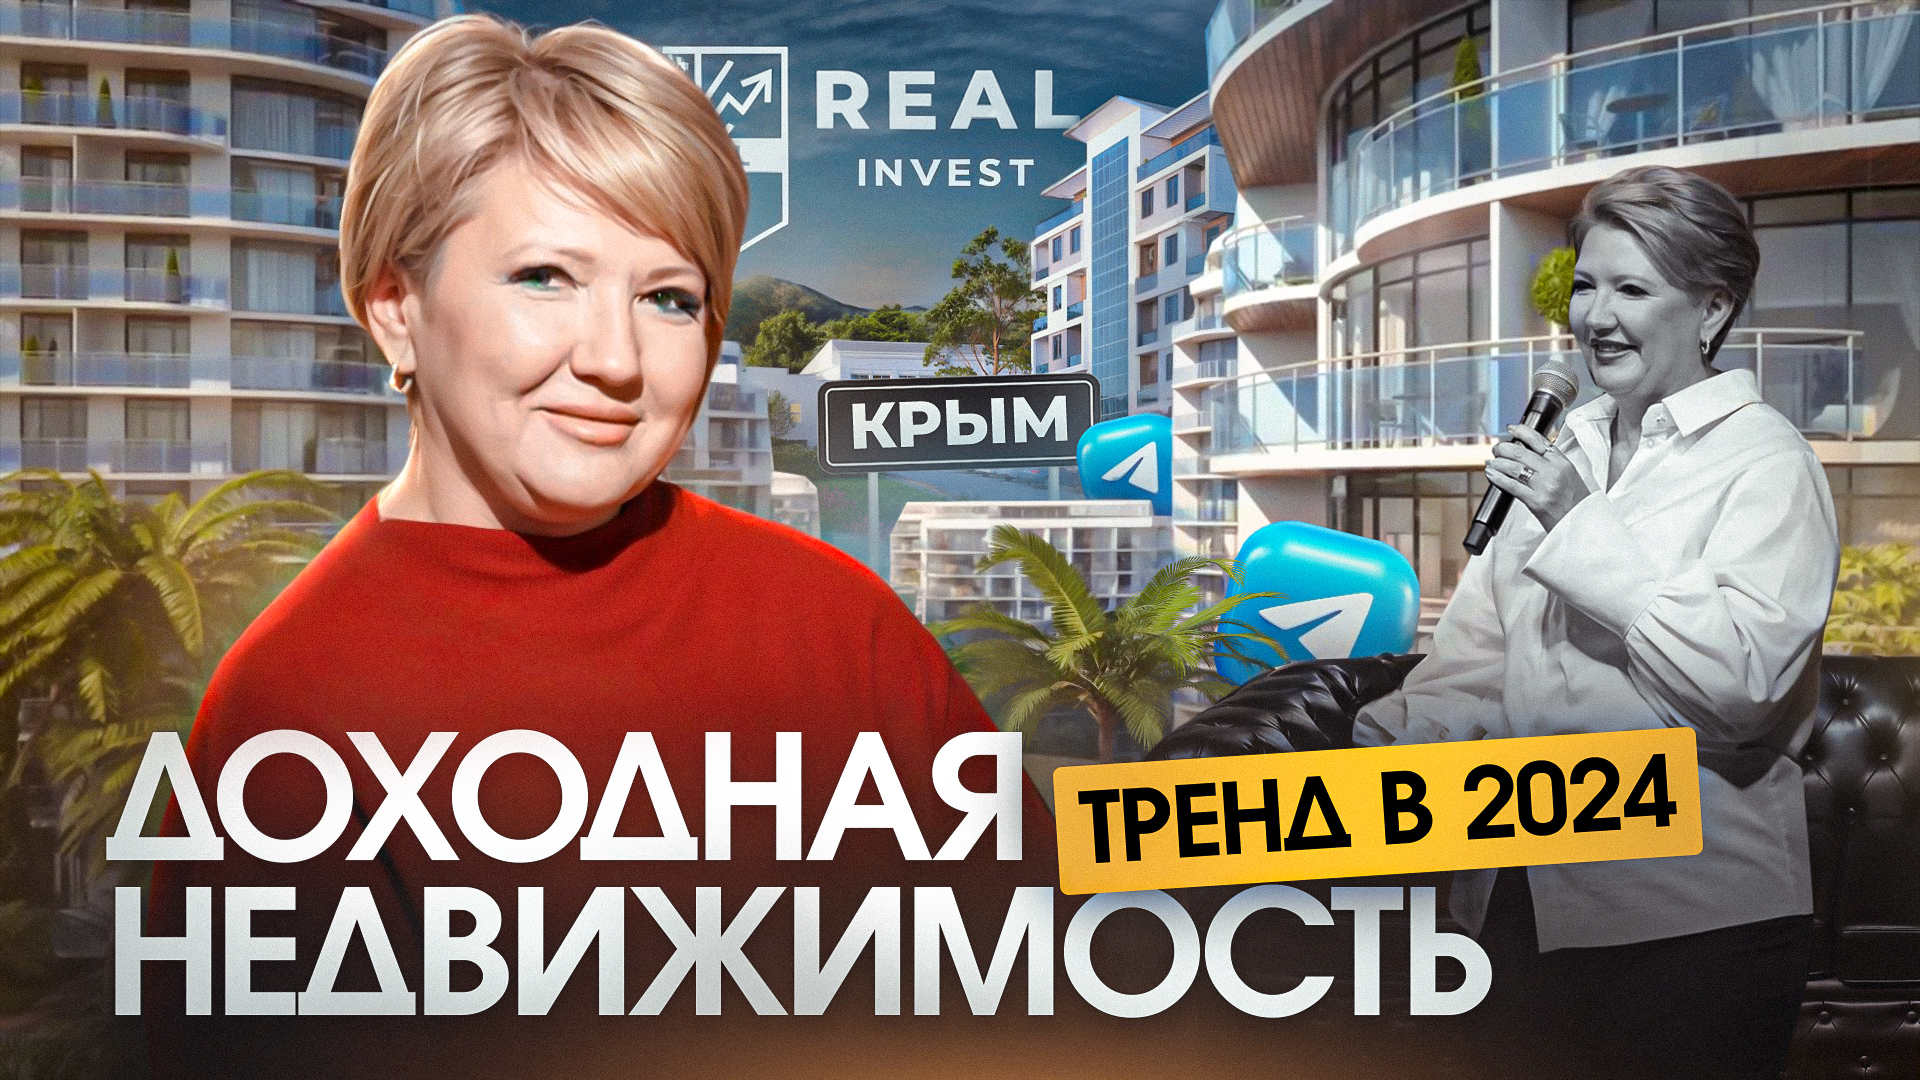 Как риелтору с помощью прямых эфиров продавать курортную недвижимость в Крыму?